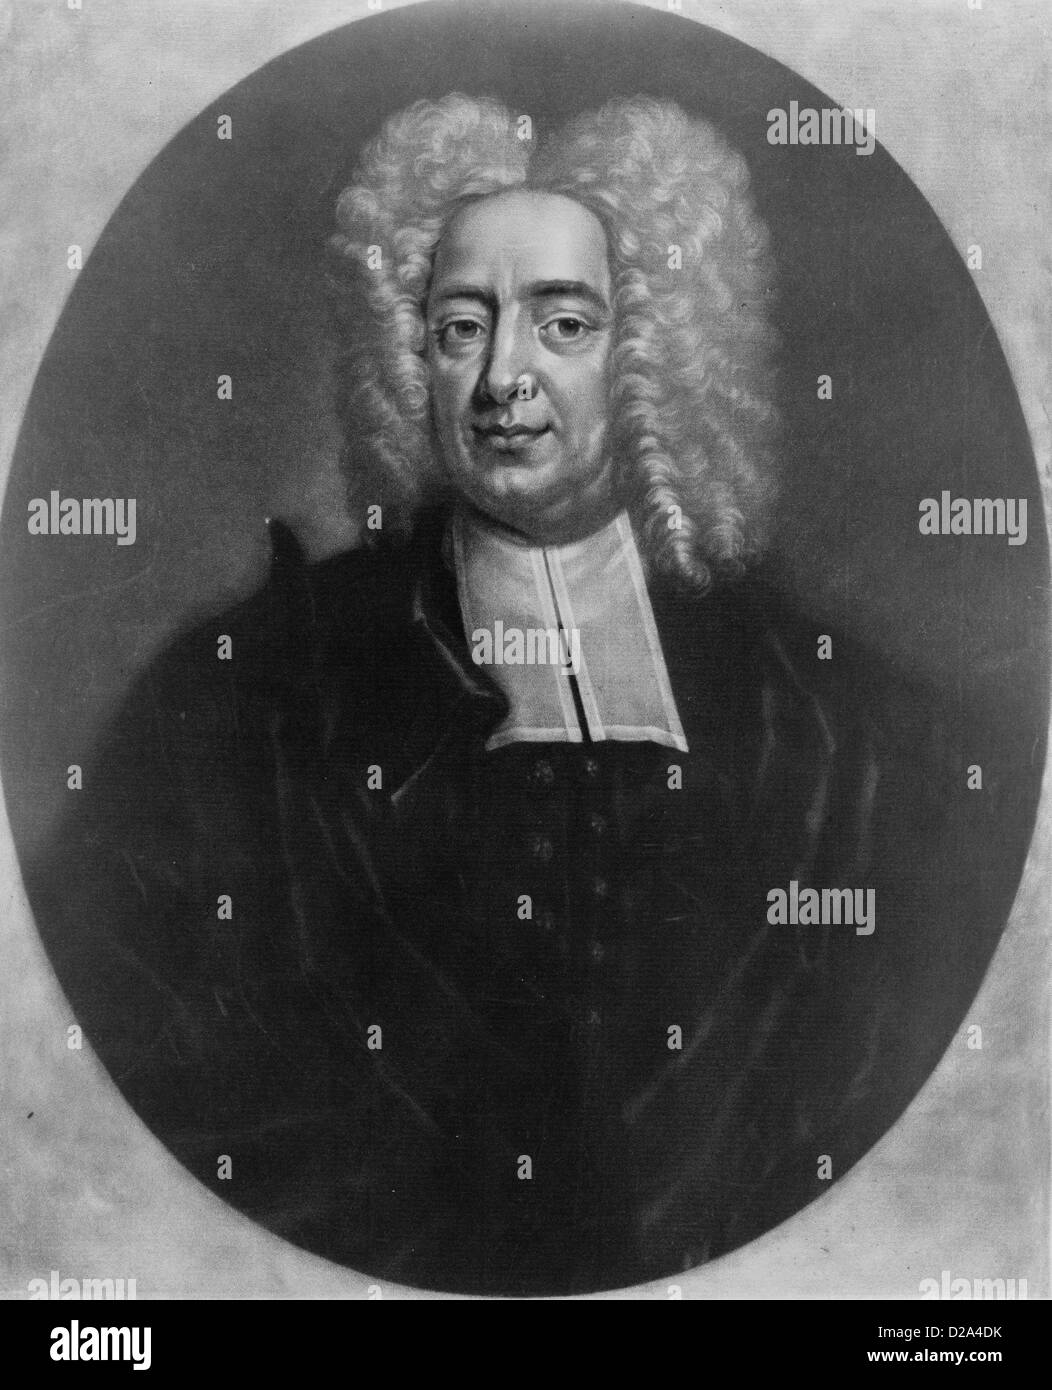 Cottonus Matherus S Theologiae Médecin Regia Societatis Londonensis .. Aetatis Suae Lxv Mdccxxvii [1727] / P Ad Vivum Pelham Banque D'Images